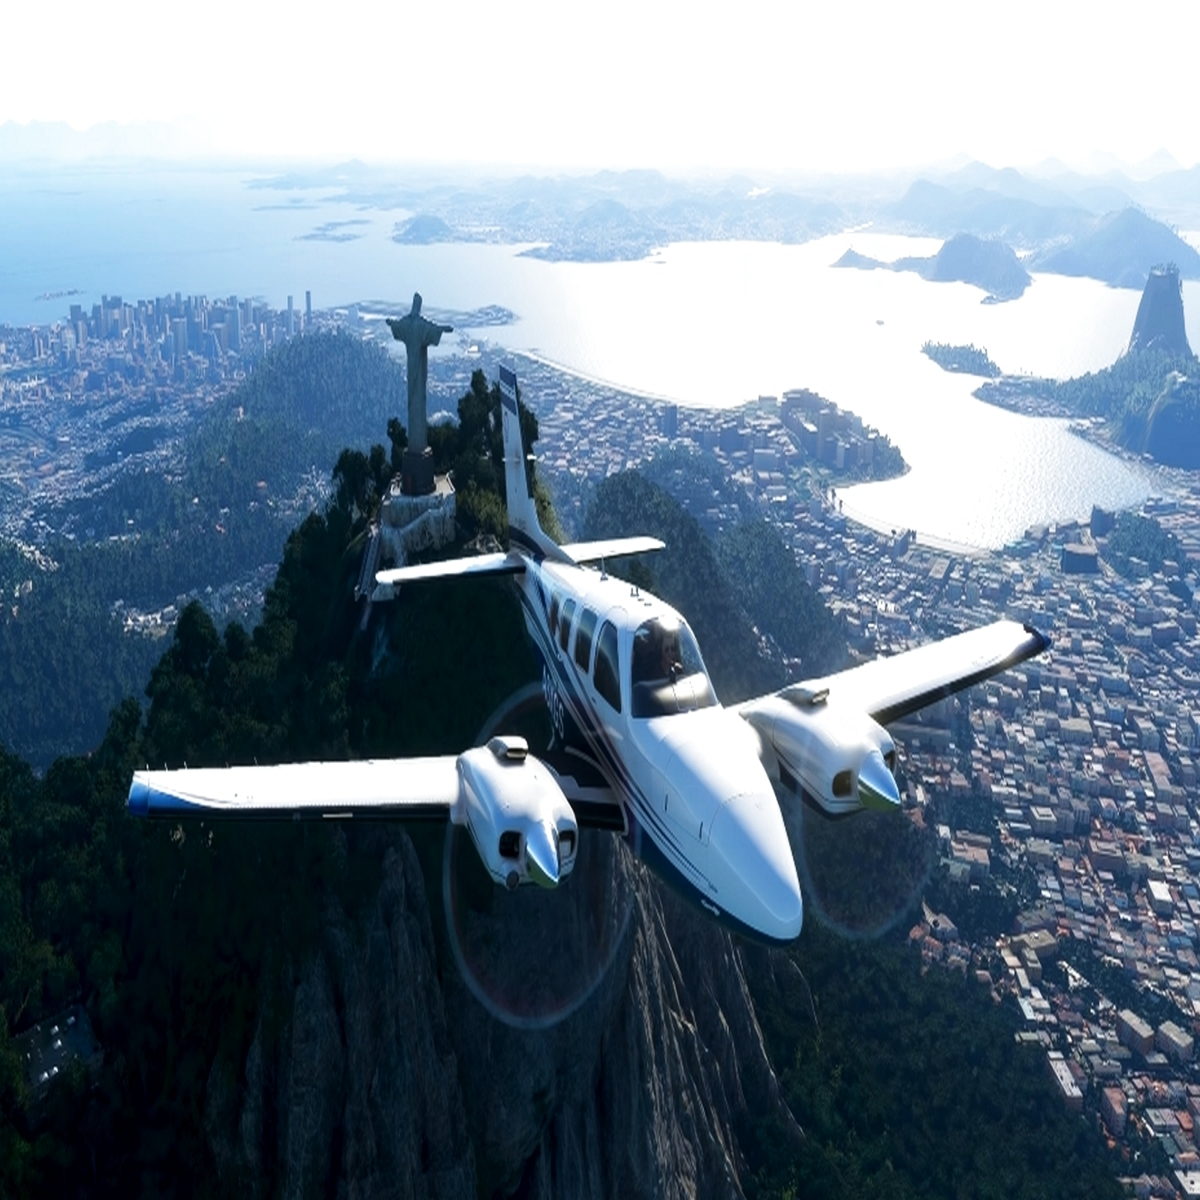 Pesando quase 100 GB, Flight Simulator apresenta desempenho impressionante  no Xbox Series S 